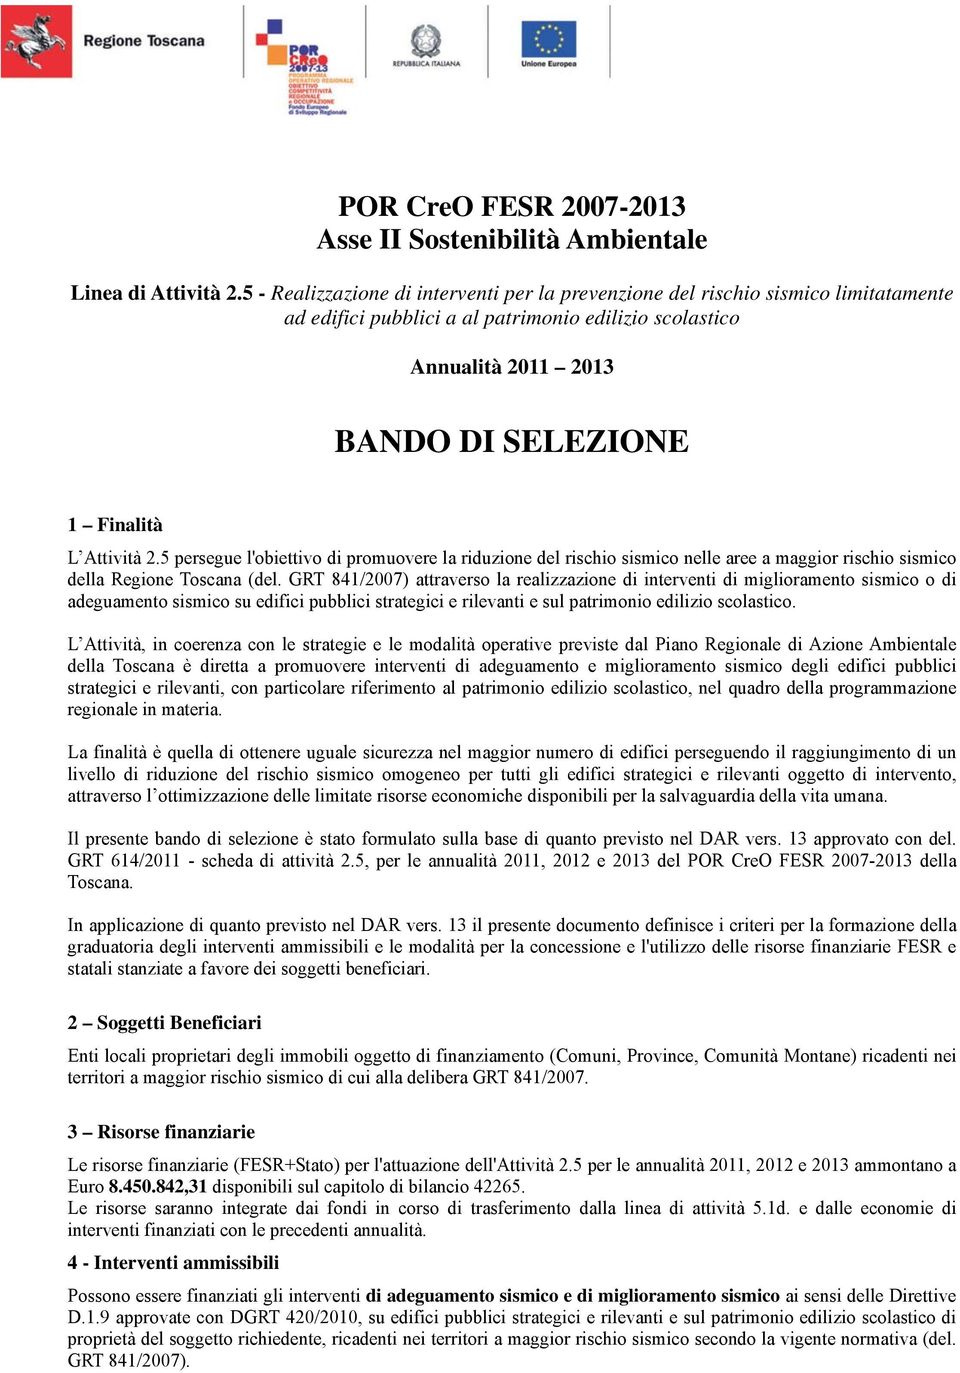 Attività 2.5 persegue l'obiettivo di promuovere la riduzione del rischio sismico nelle aree a maggior rischio sismico della Regione Toscana (del.